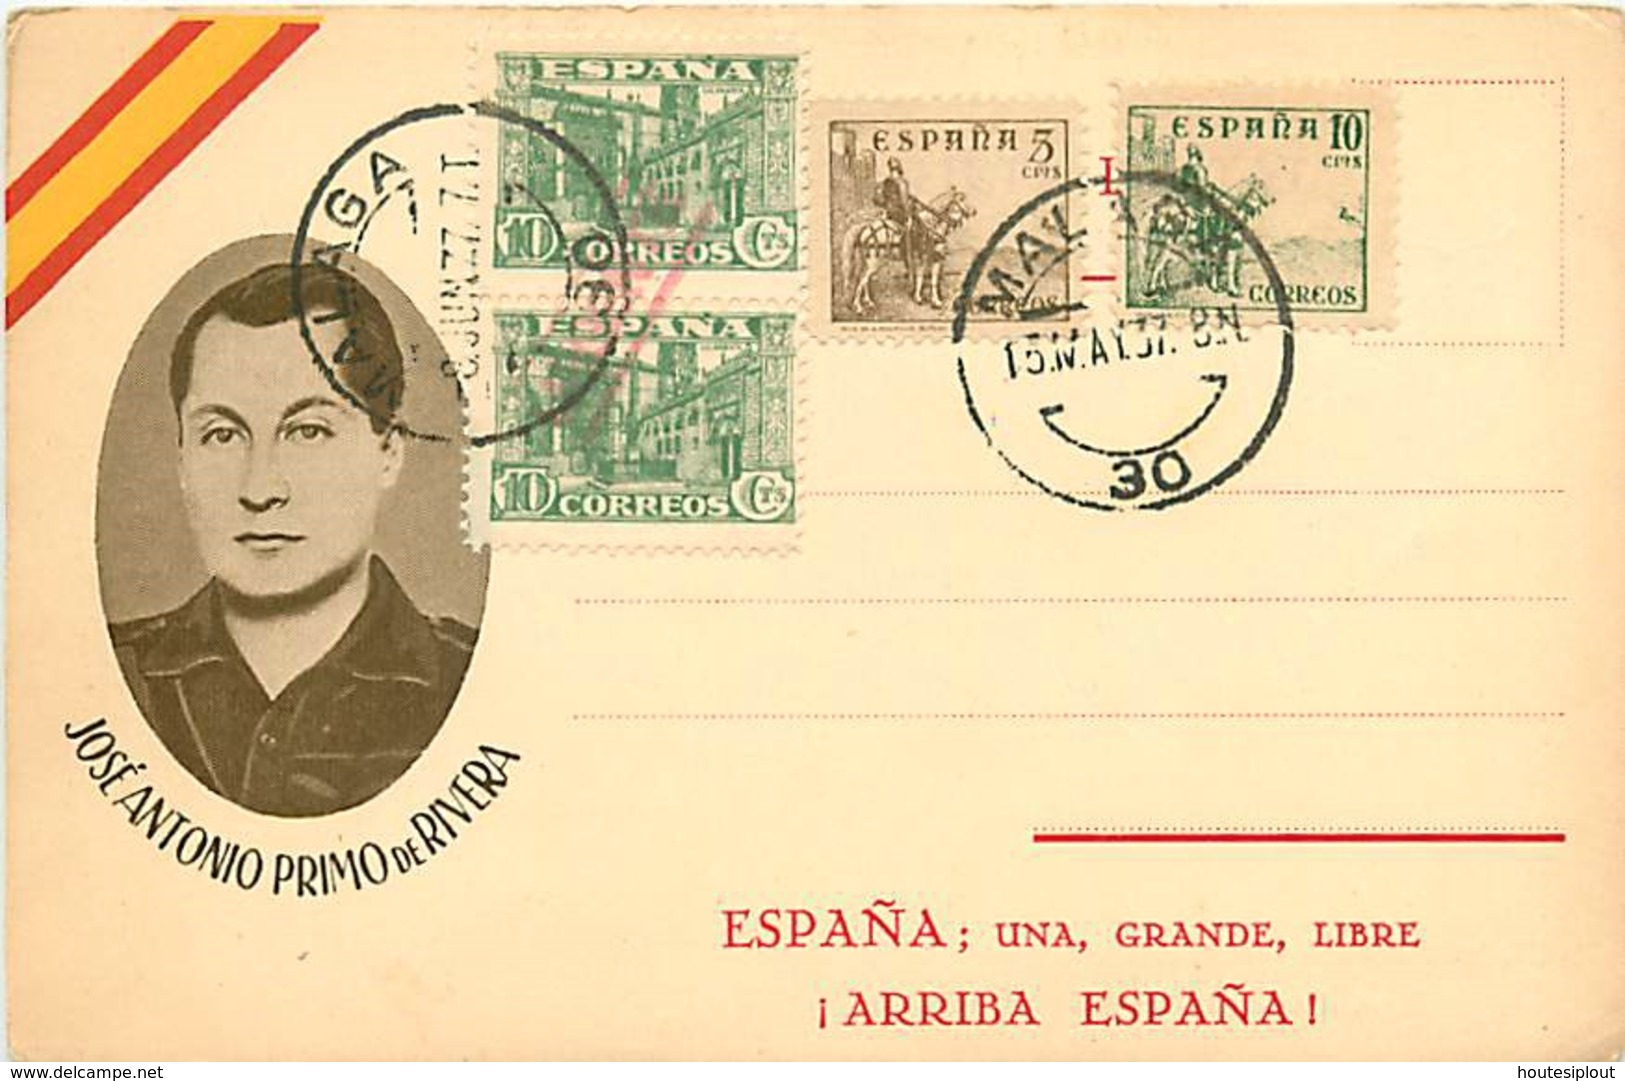 Espagne. 7 documents de propagande franquiste + 1 fragment de lettre  1937